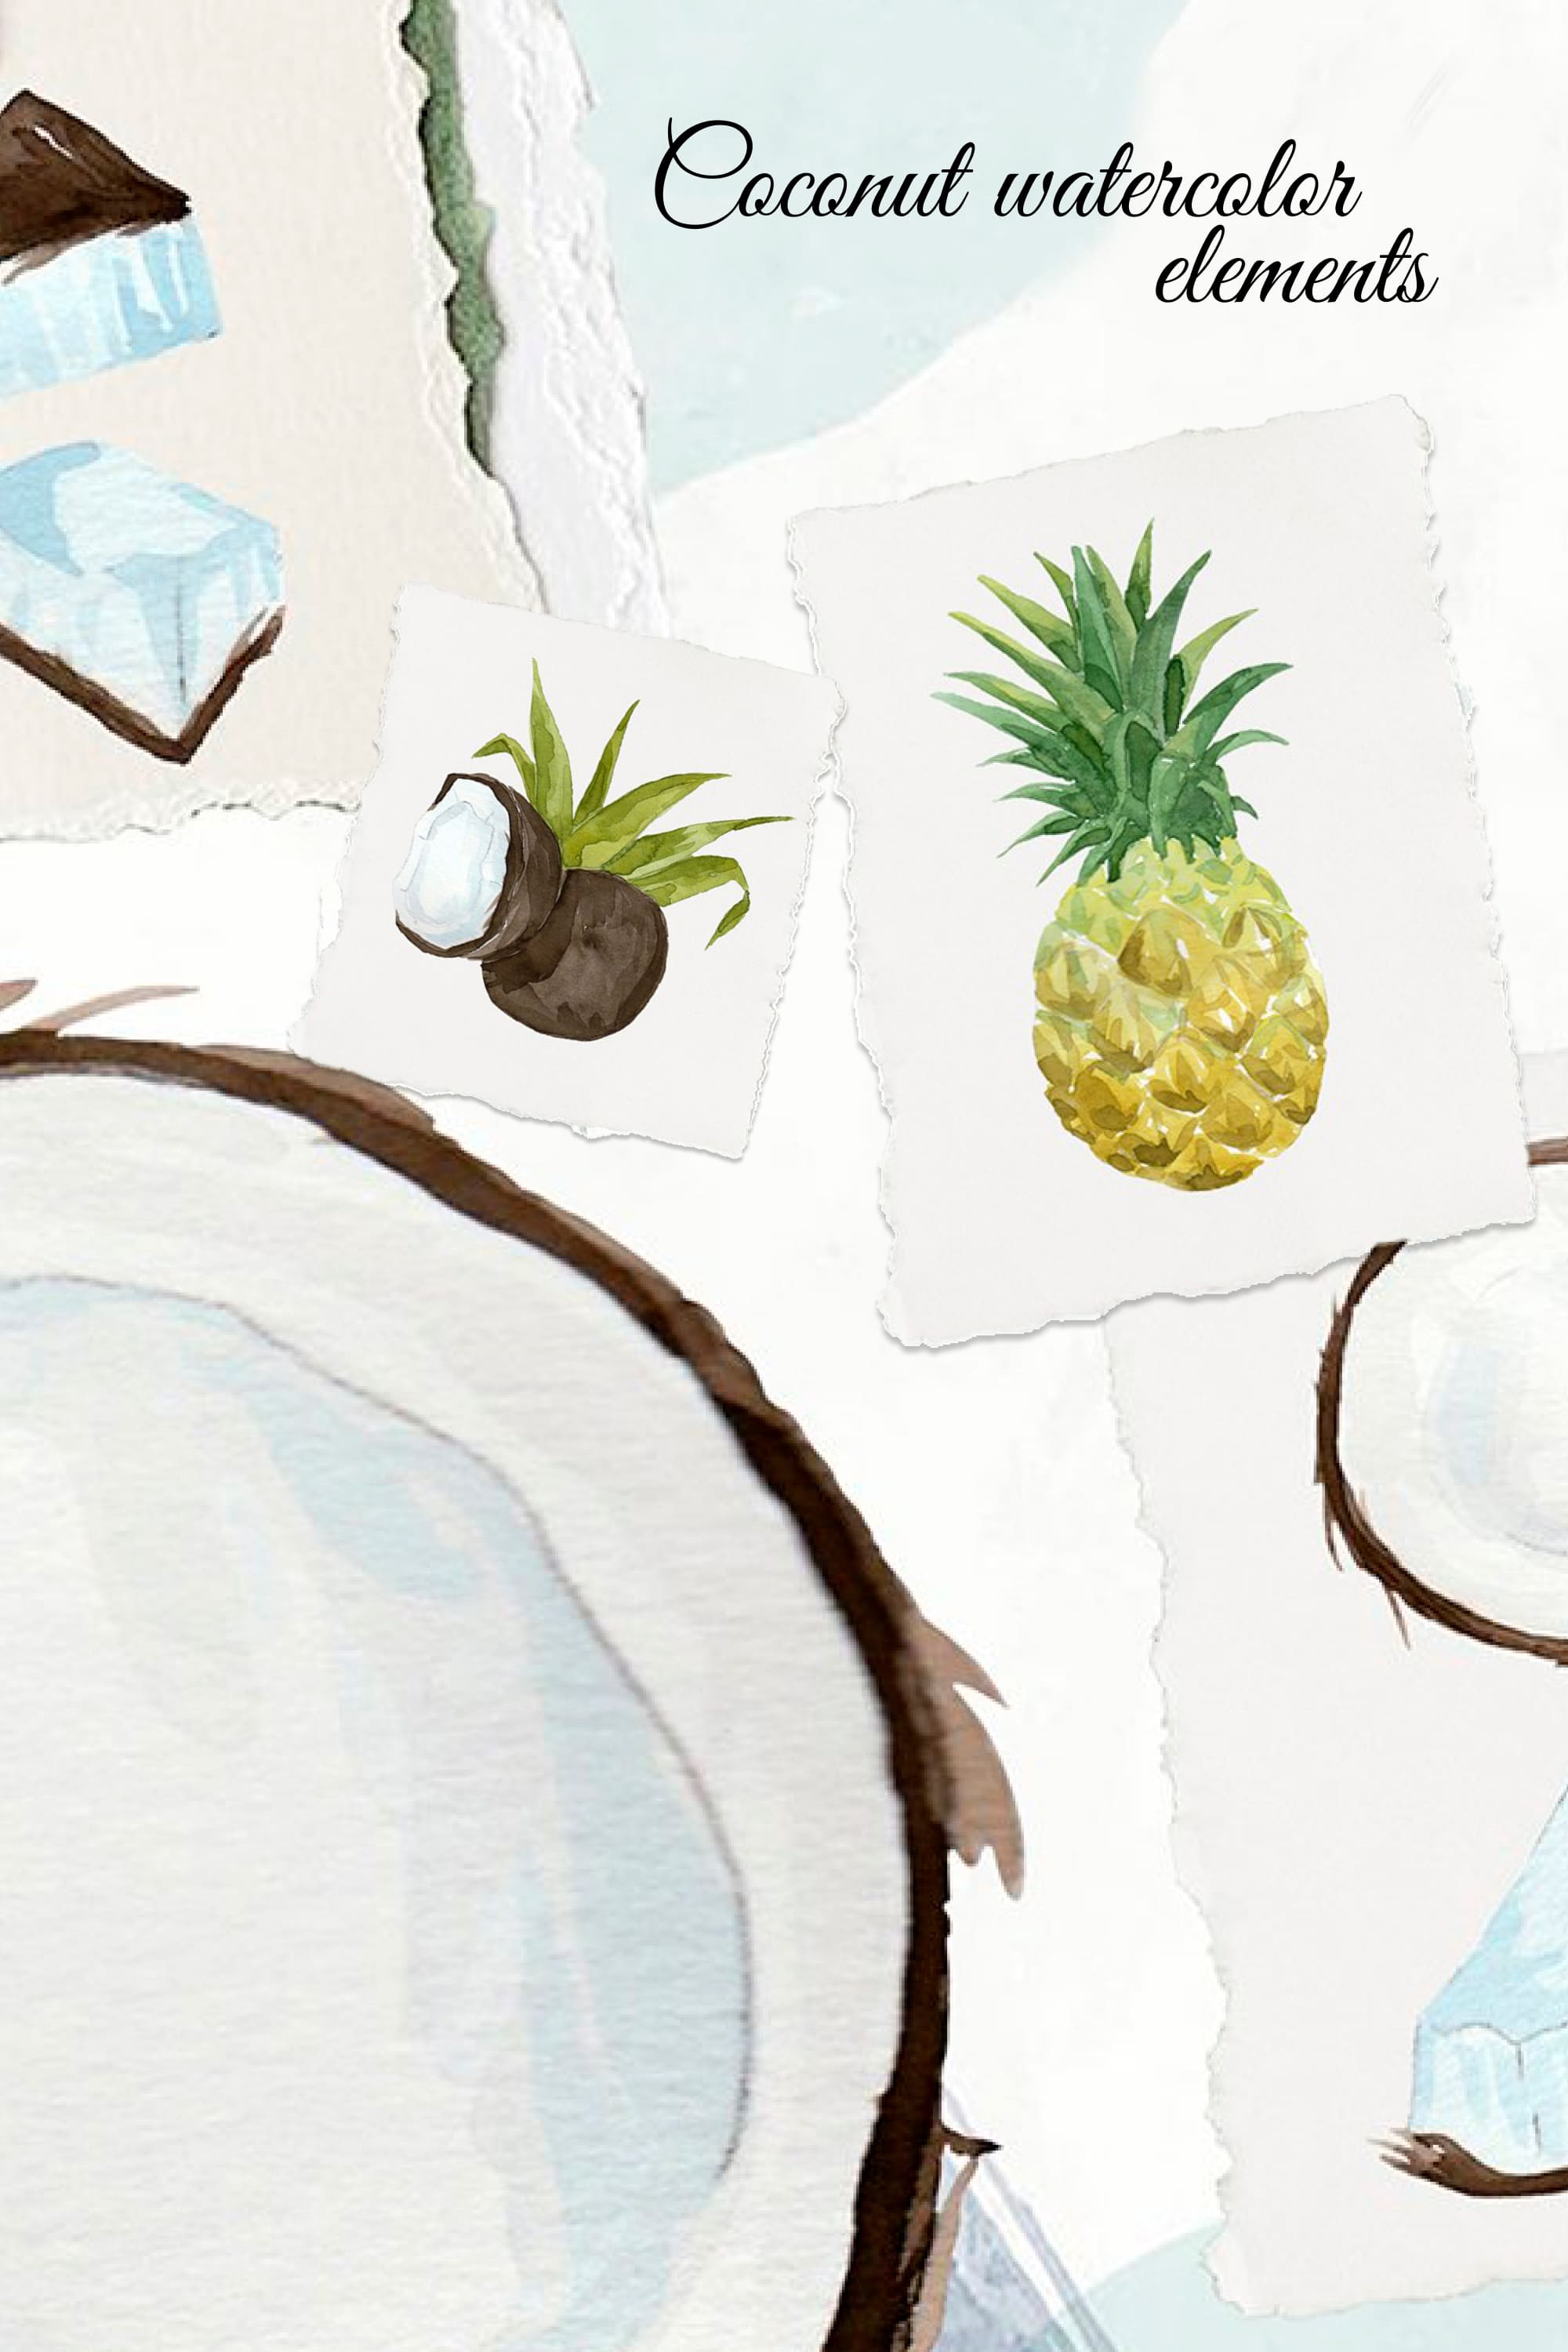 coconut watercolor elements pinterest